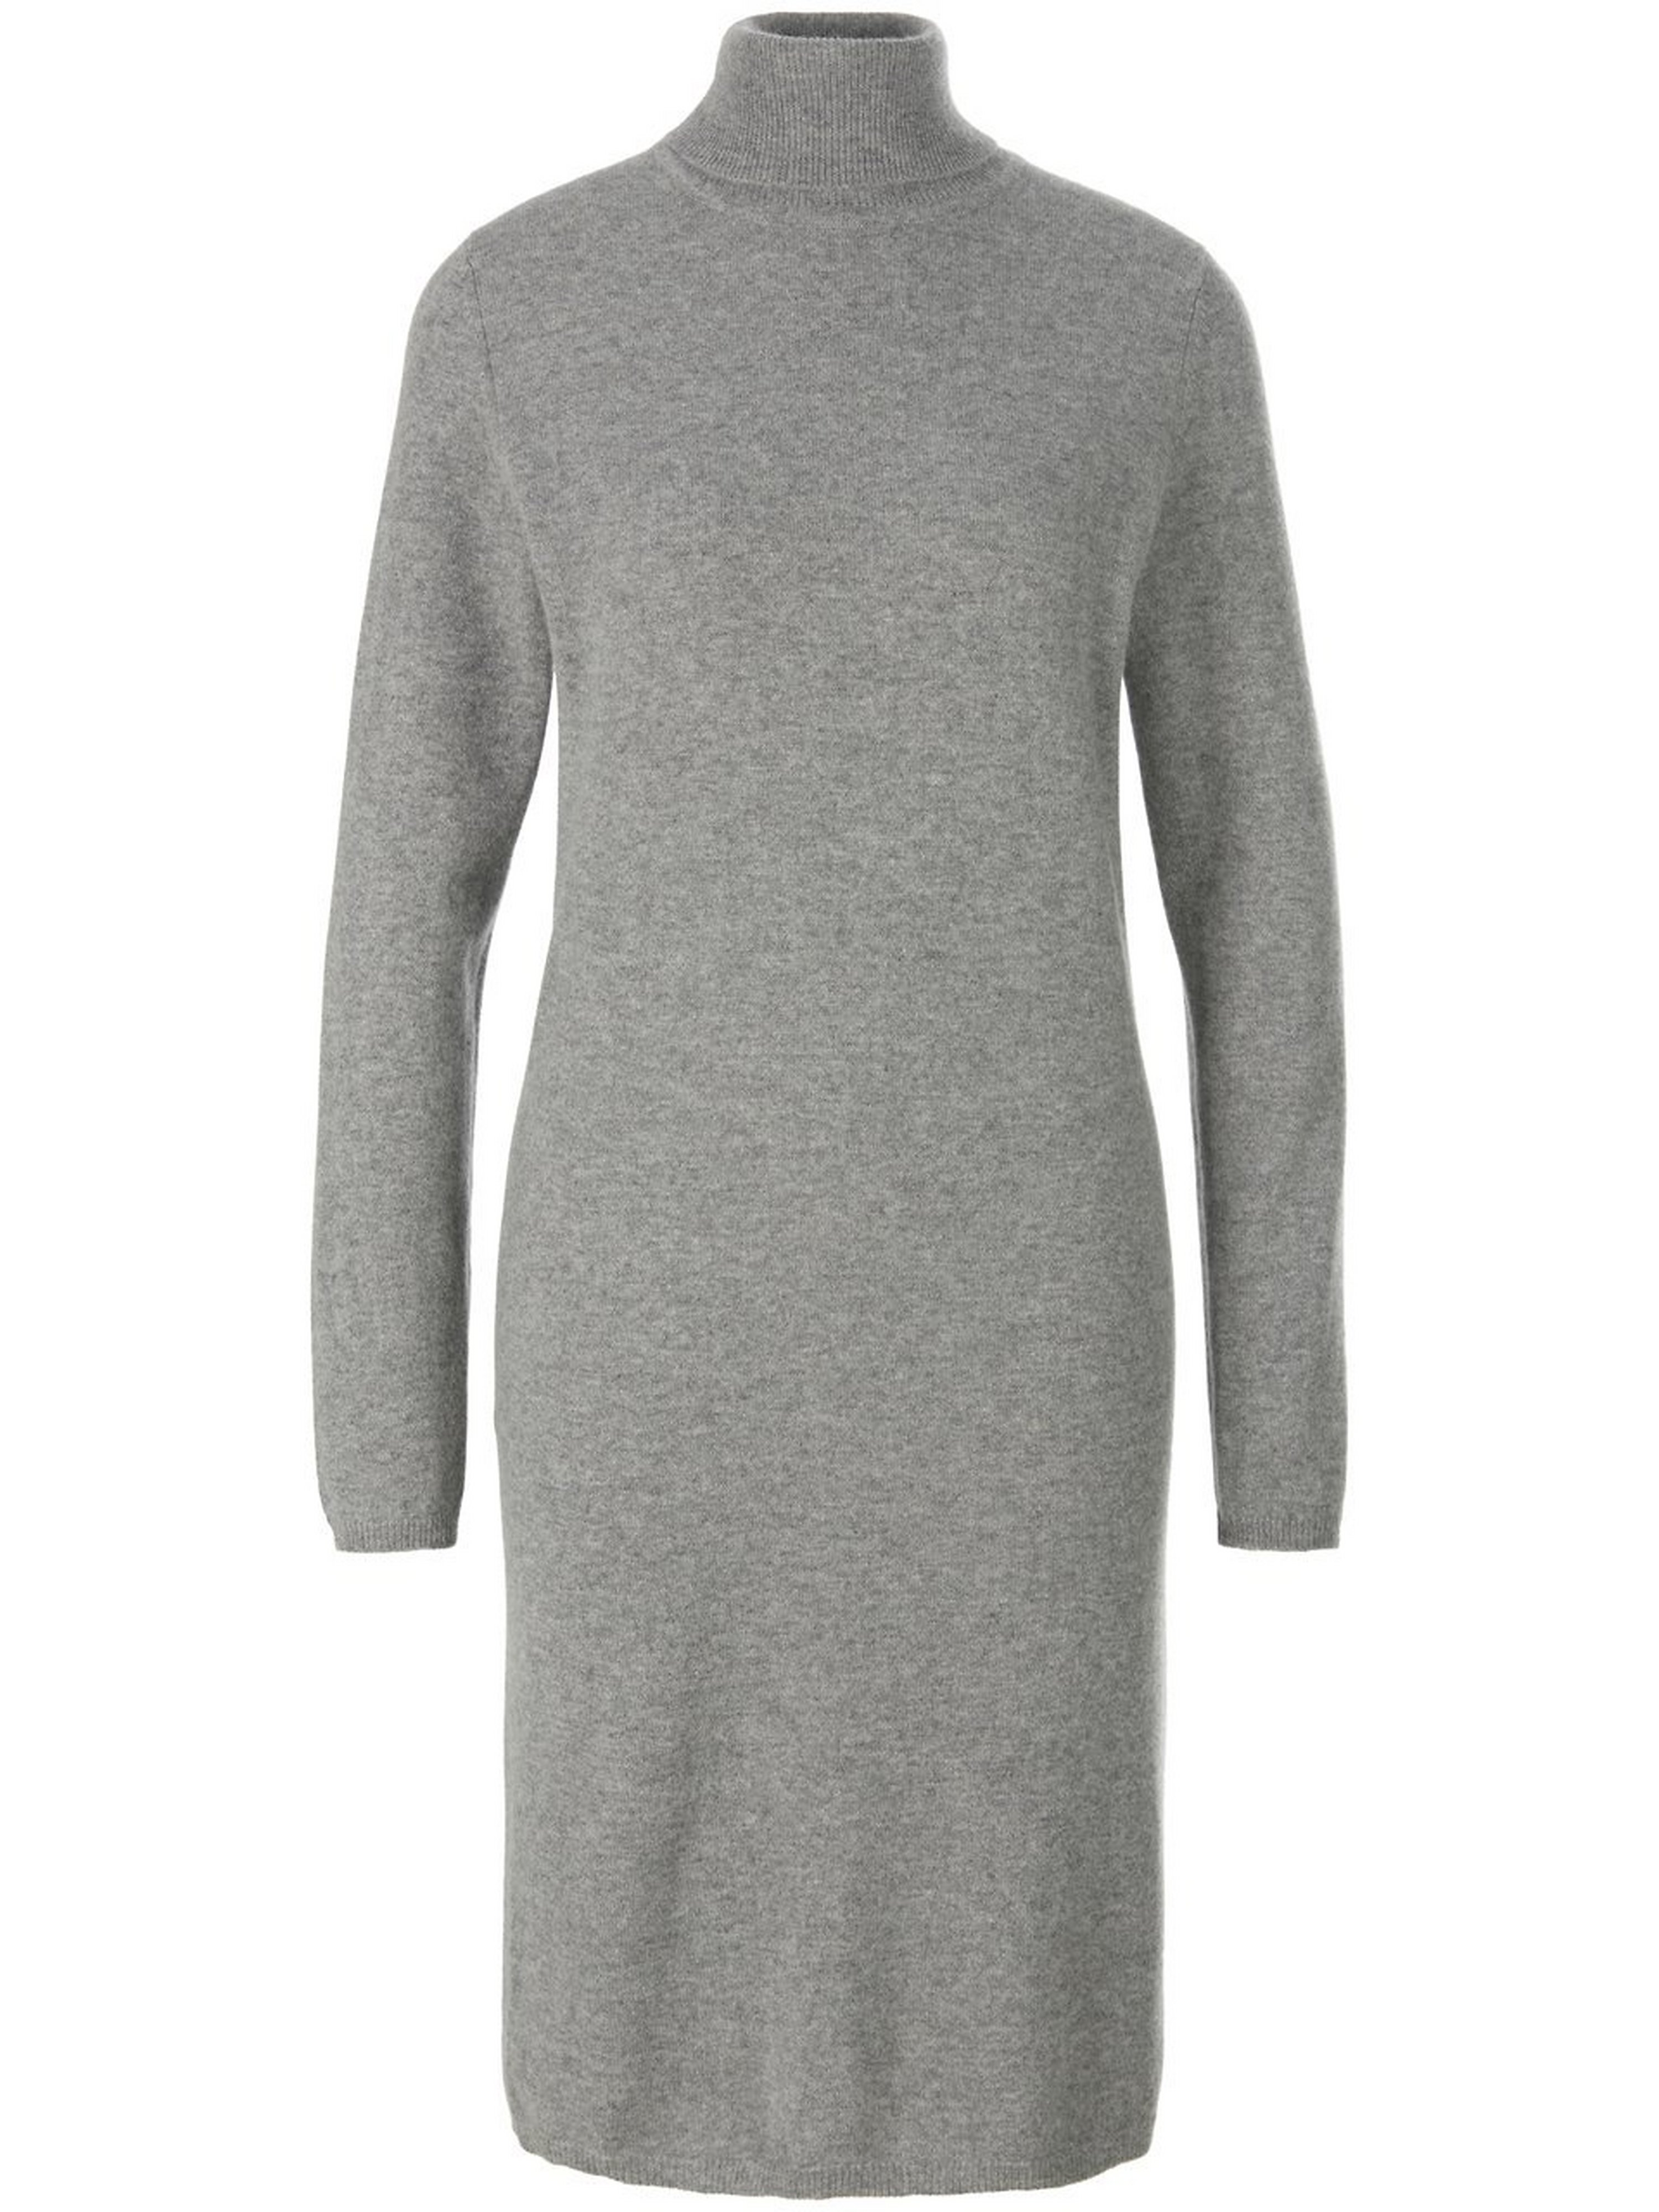 Gebreide jurk Van include grijs